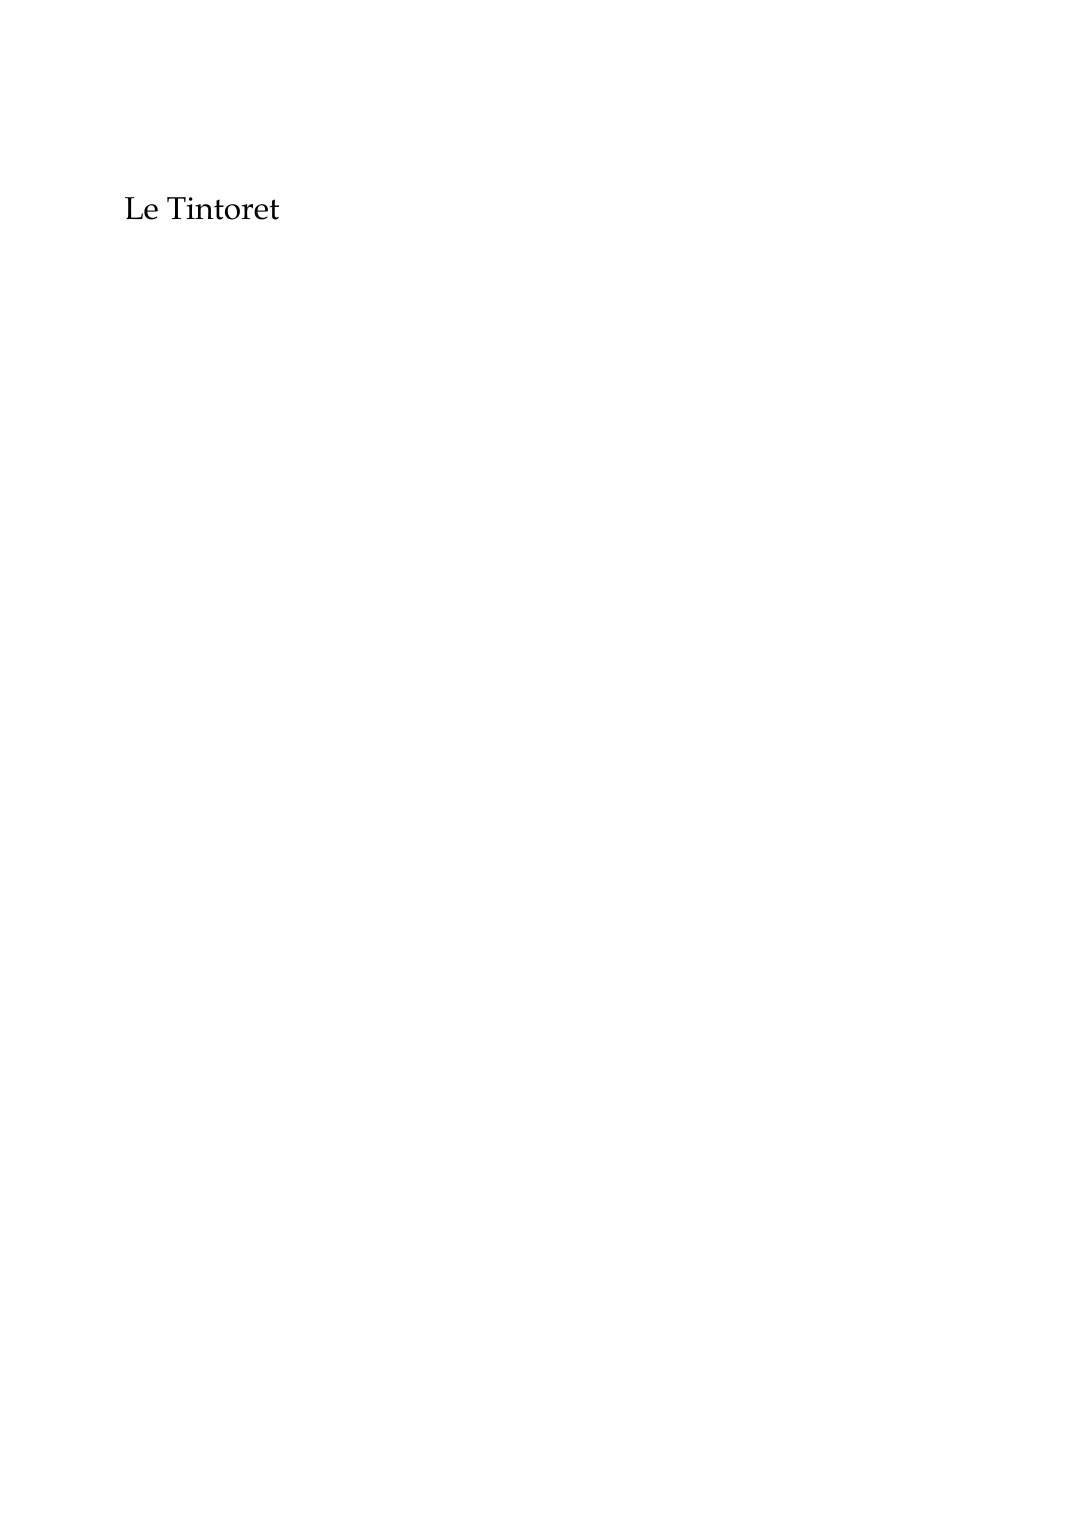 Prévisualisation du document Le Tintoret par François Fosca A l'époque de la Renaissance, les peintres de Venise, le Titien, Véronèse,Paris Bordone, Palma, et bien d'autres, veulent, dans leurs toiles oùchantent les pourpres, les ors et les azurs, glorifier le faste et l'opulence dela grande métropole mercantile.